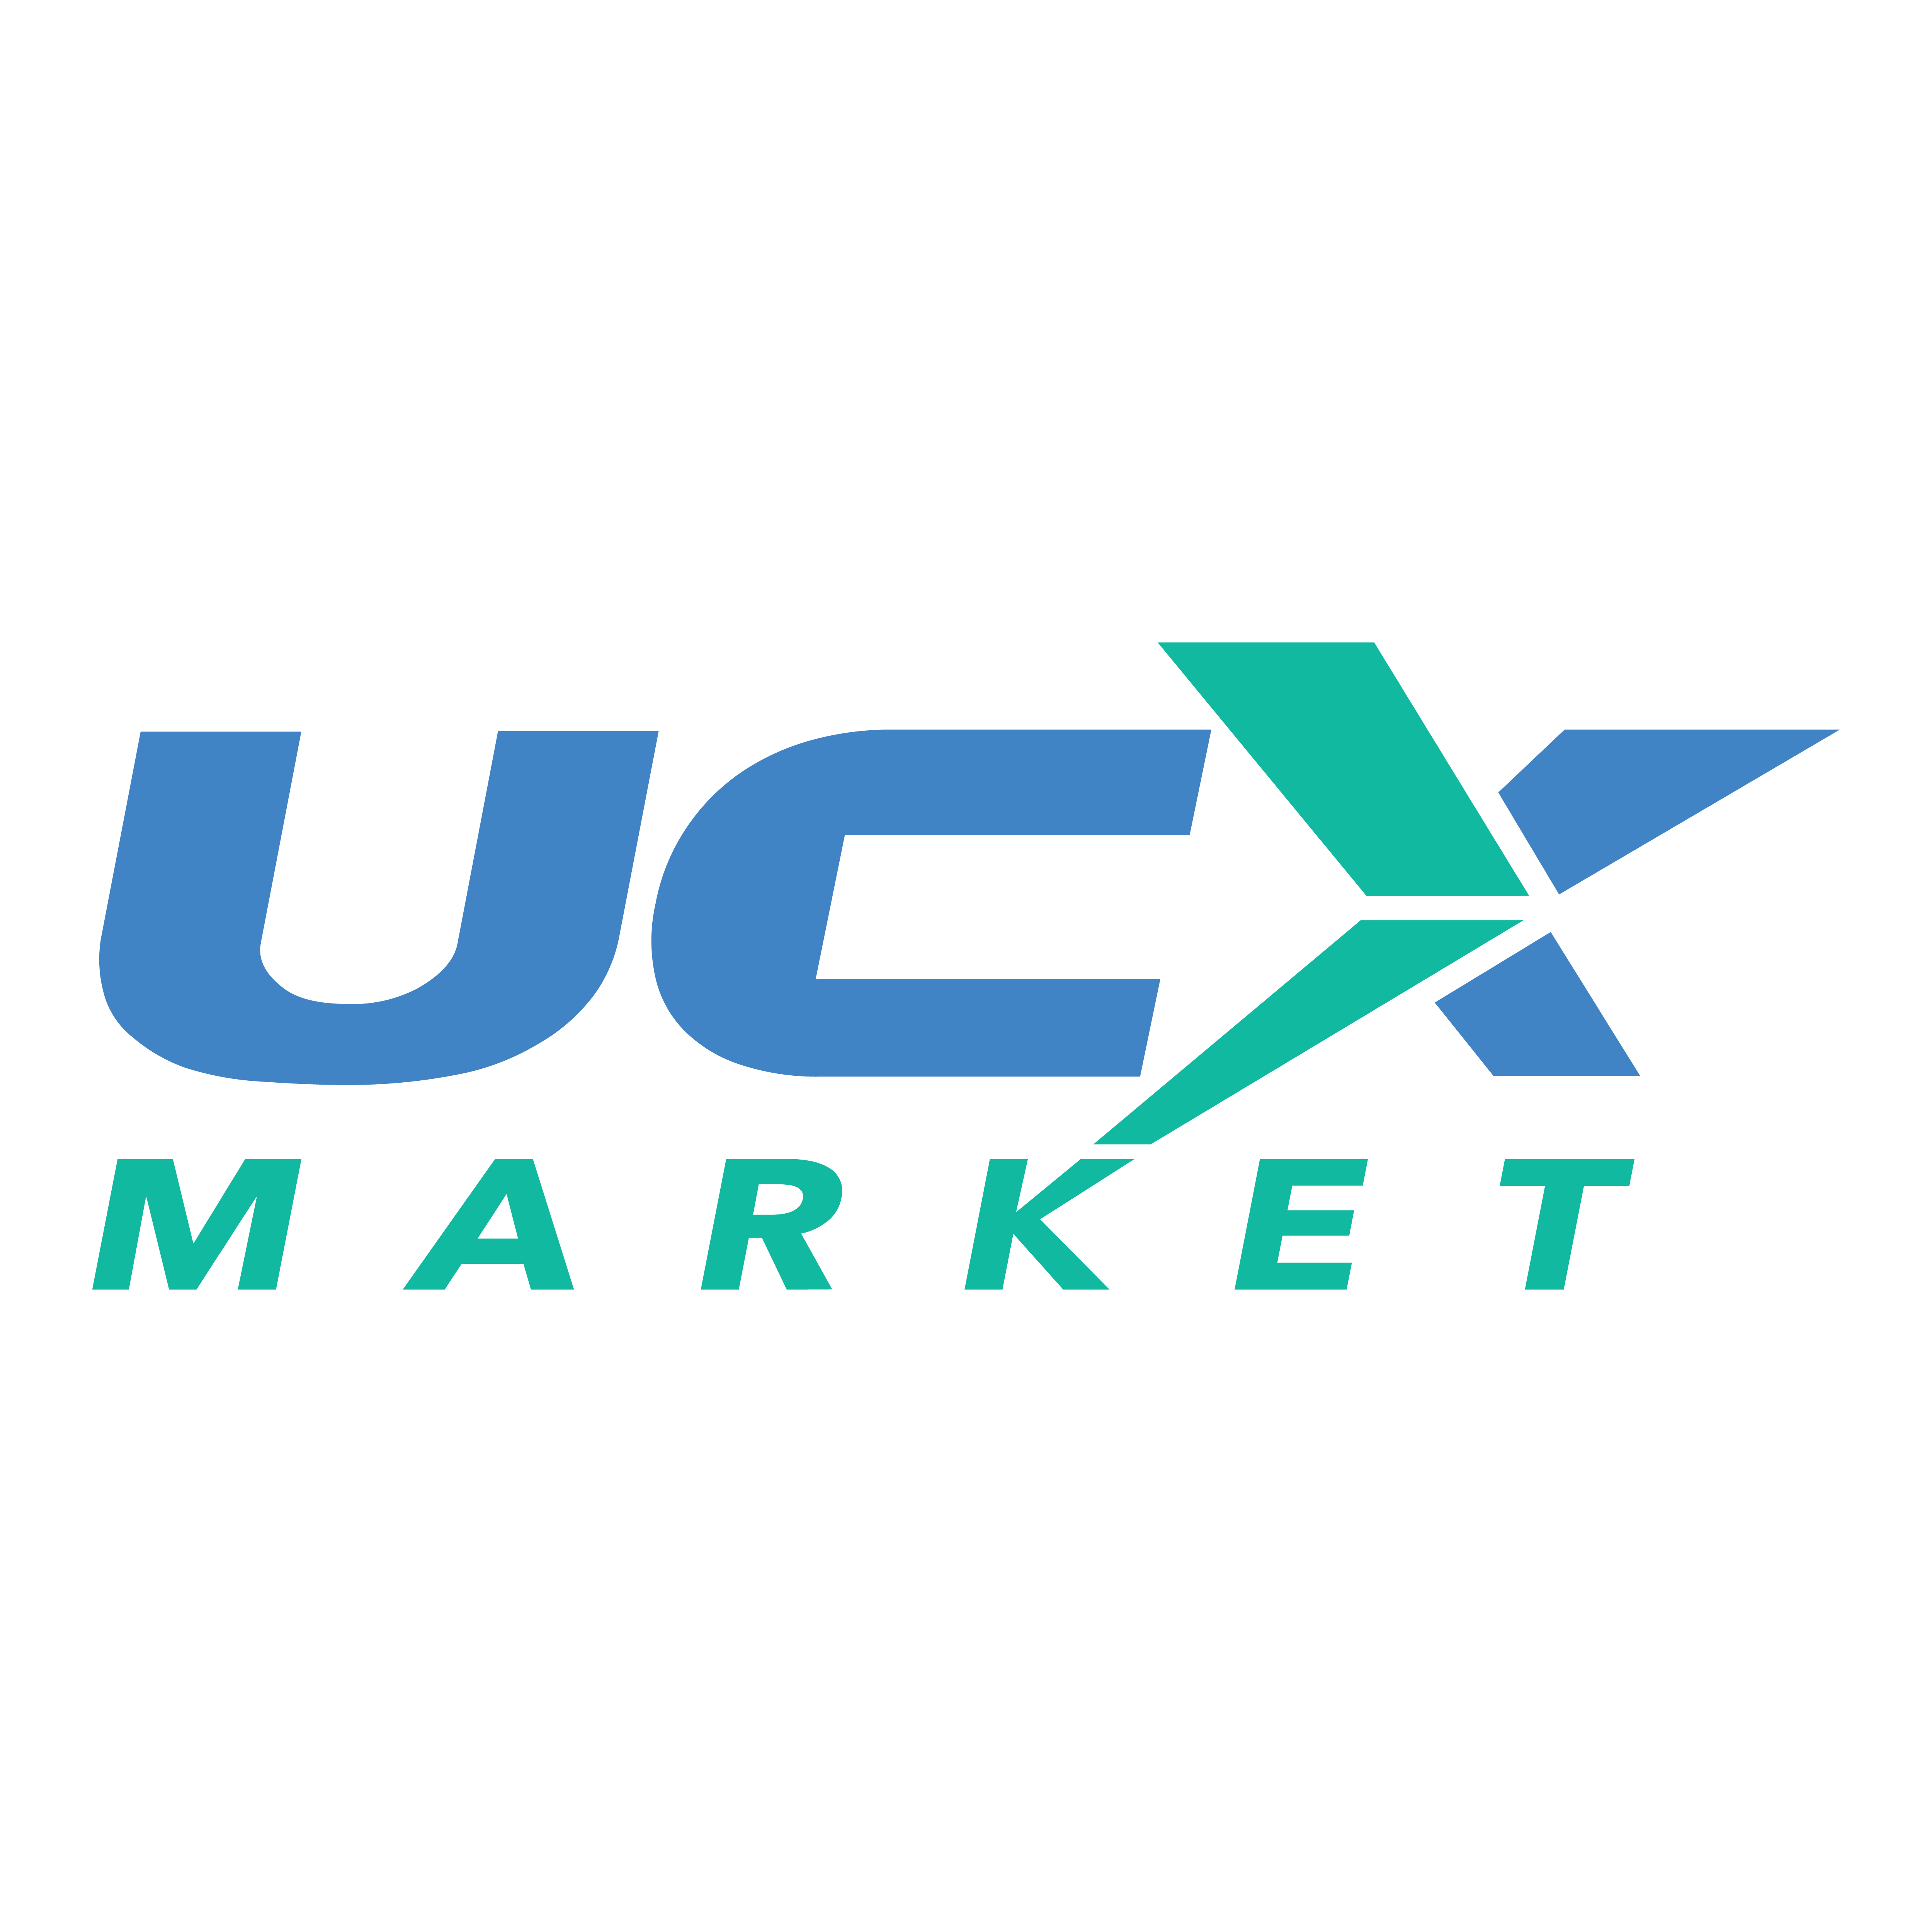 UCXmarket logo_1200x1200px-01